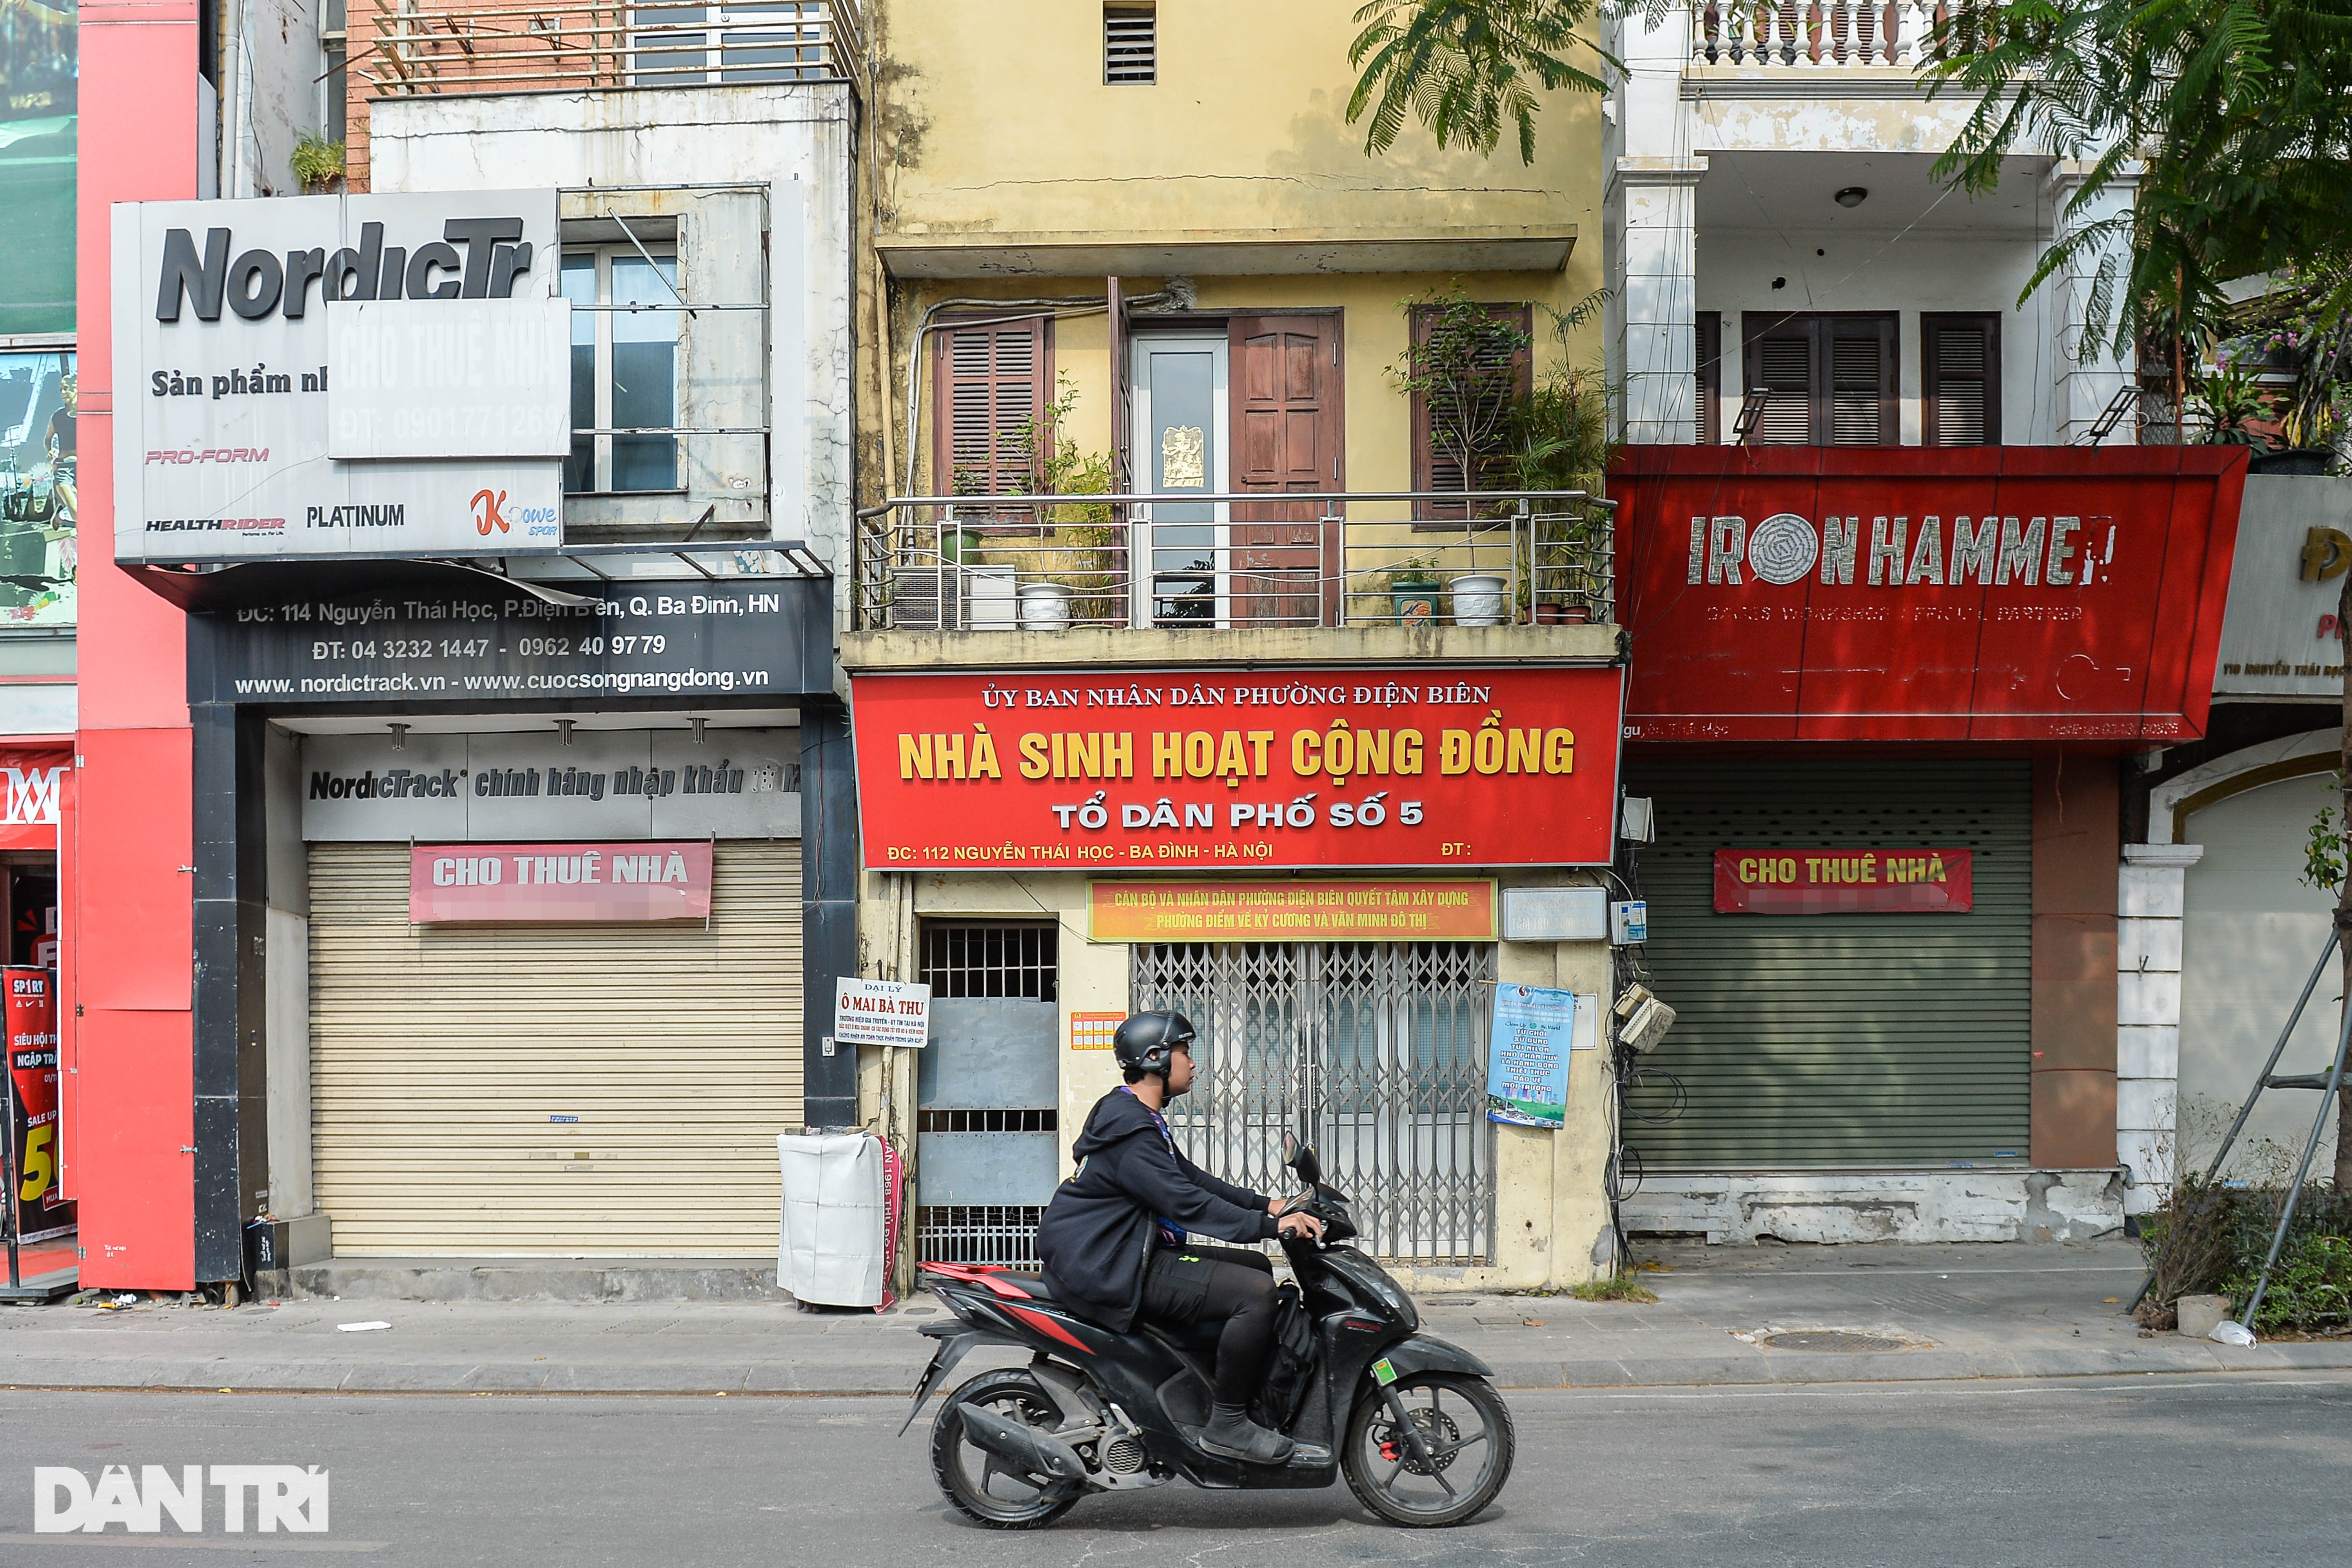 Hàng loạt cửa hàng ở vị trí vàng của Hà Nội treo biển cho thuê vẫn ế ẩm - 3